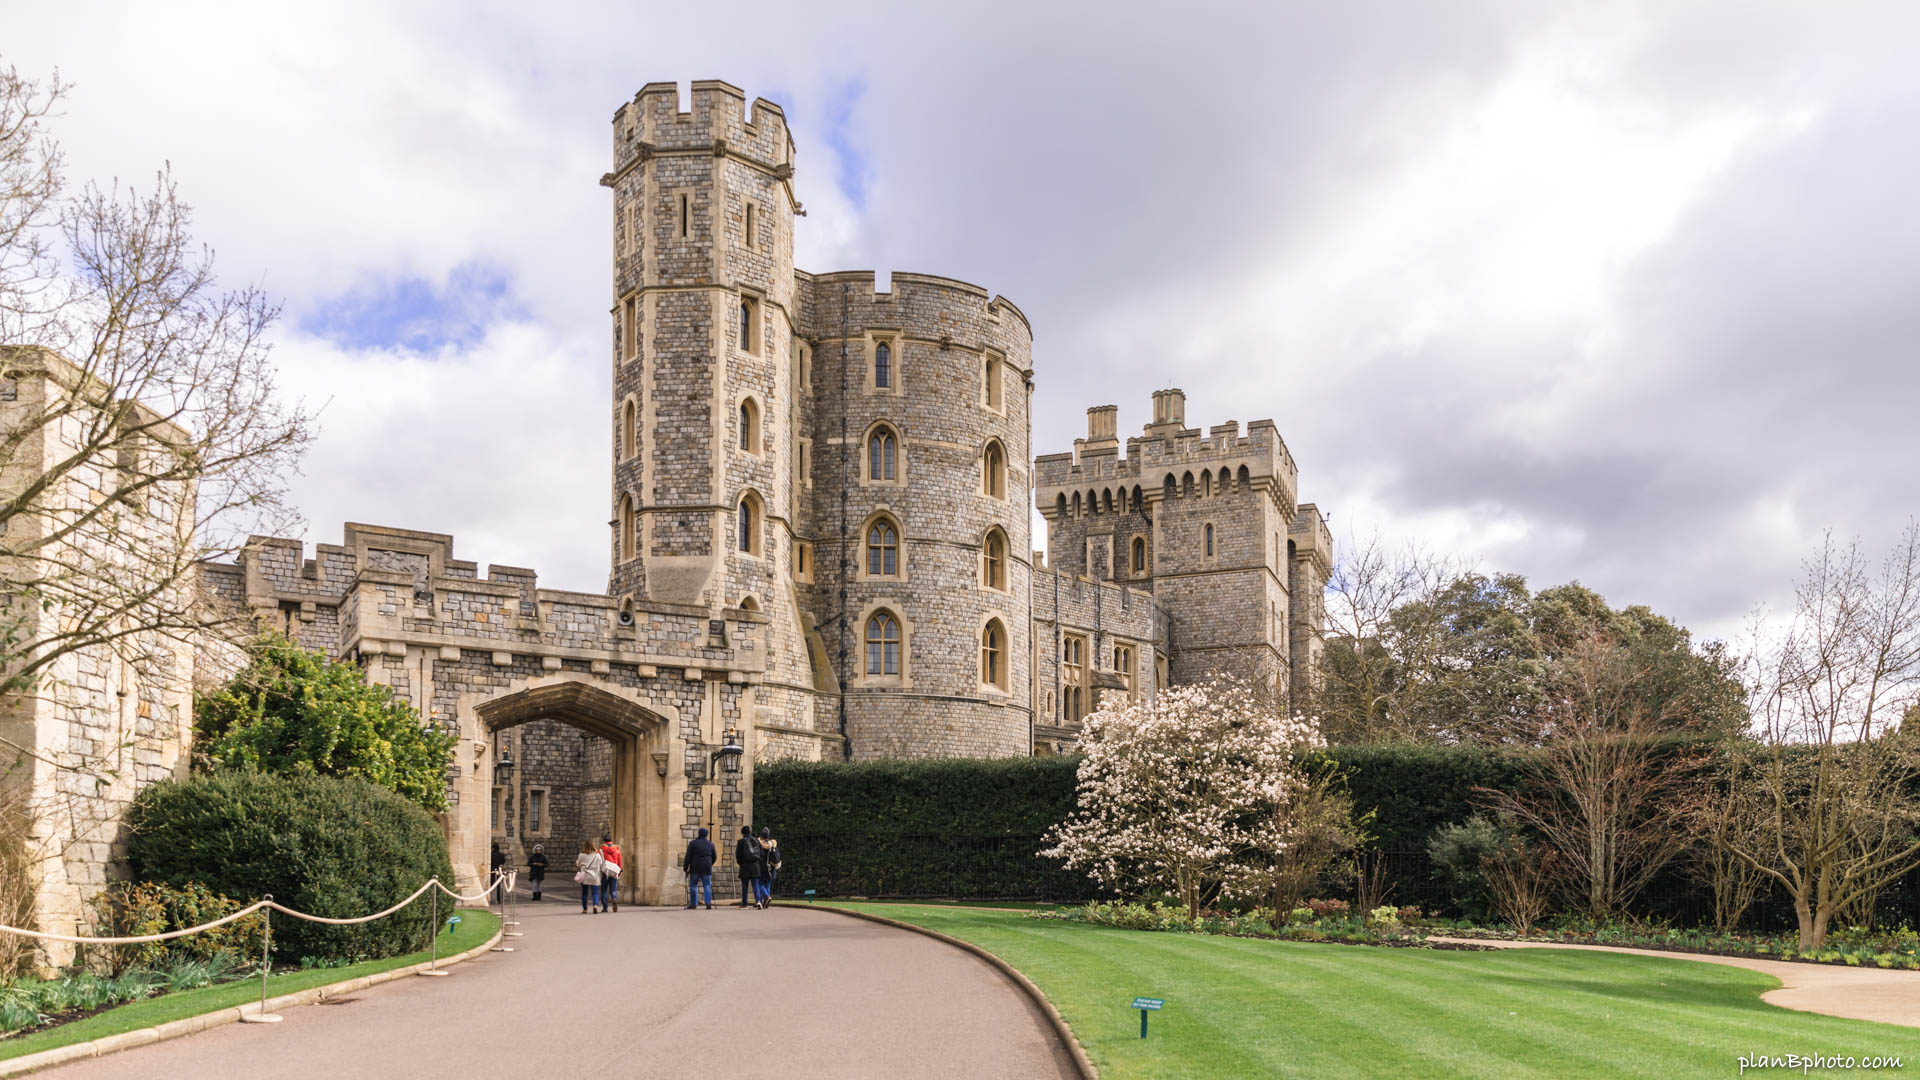 Windsor Castle inside the walls, UK